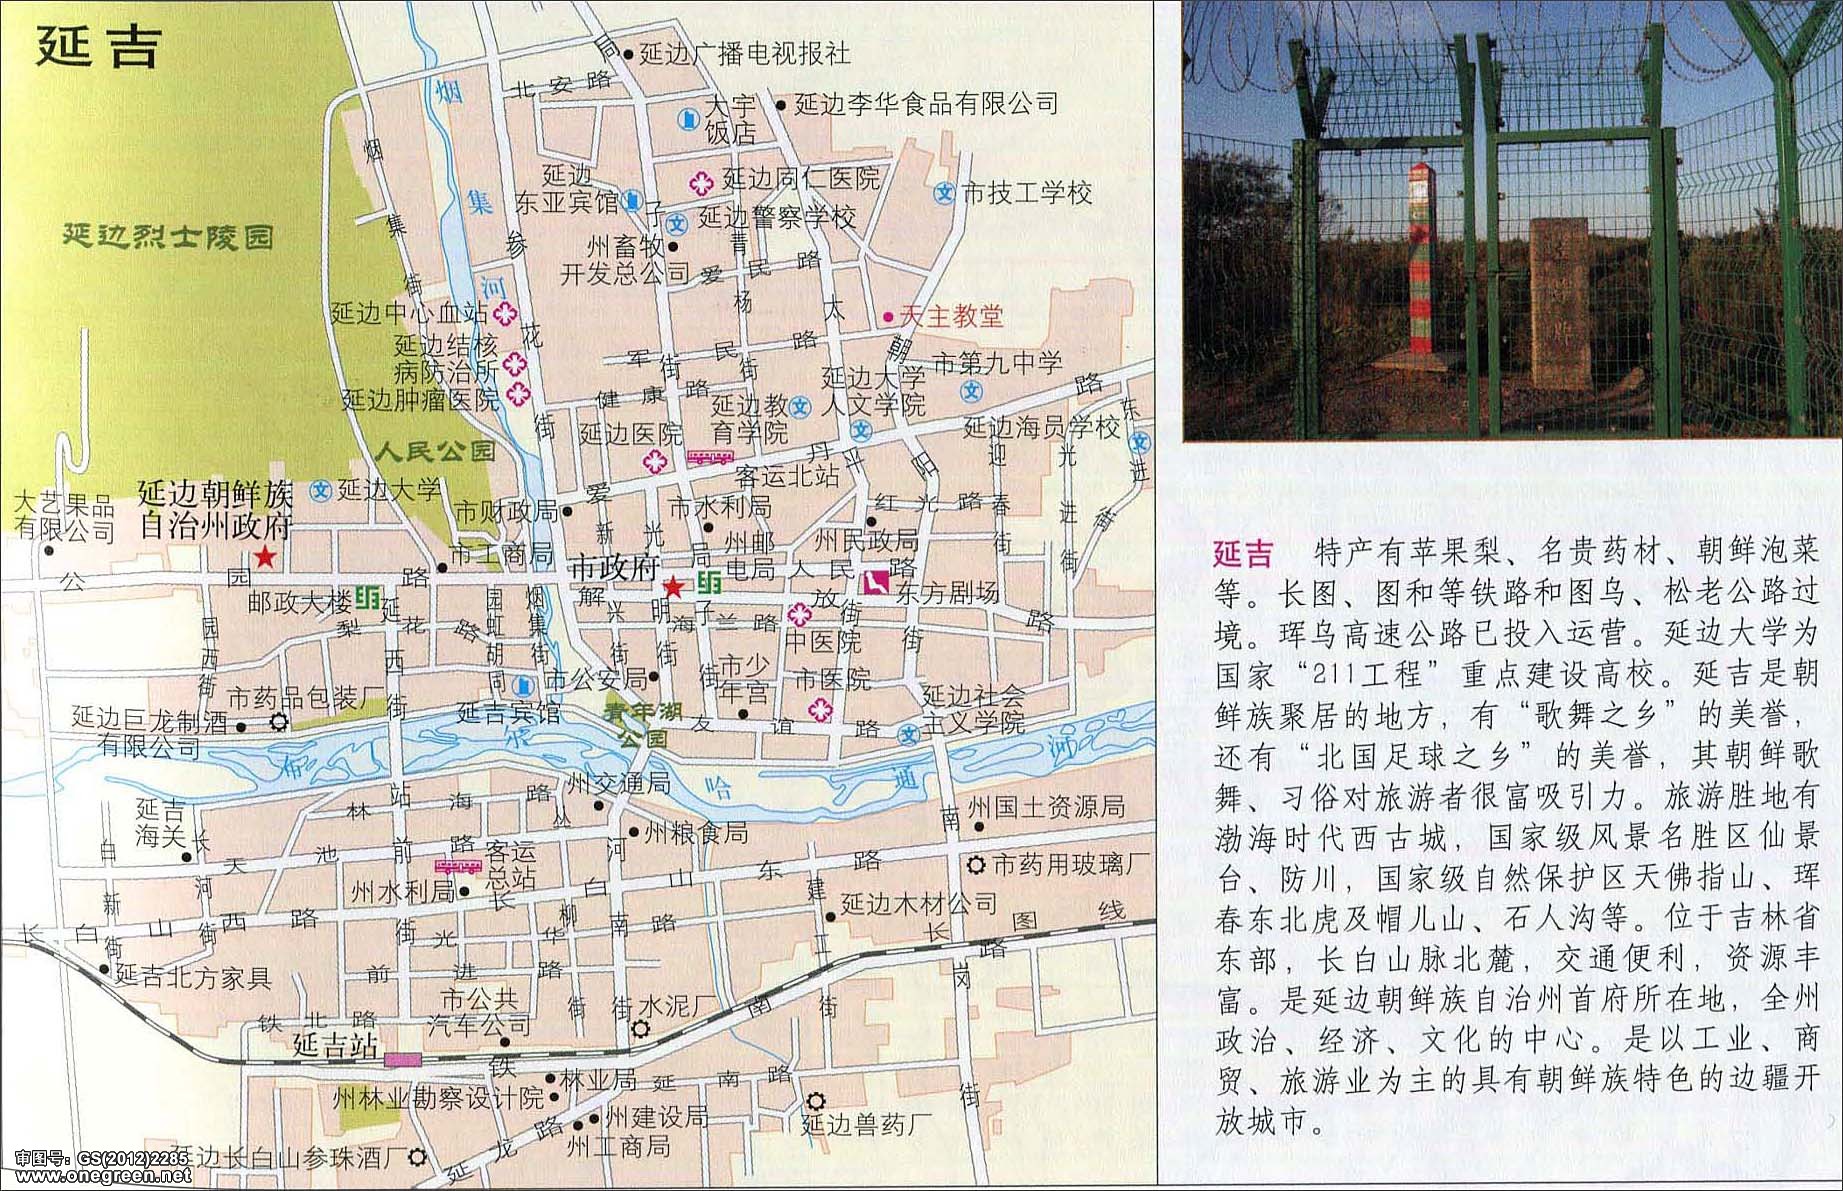 世界各国 | 中国各地 | 返回首页 栏目导航:长春  白山  吉林市  四平图片